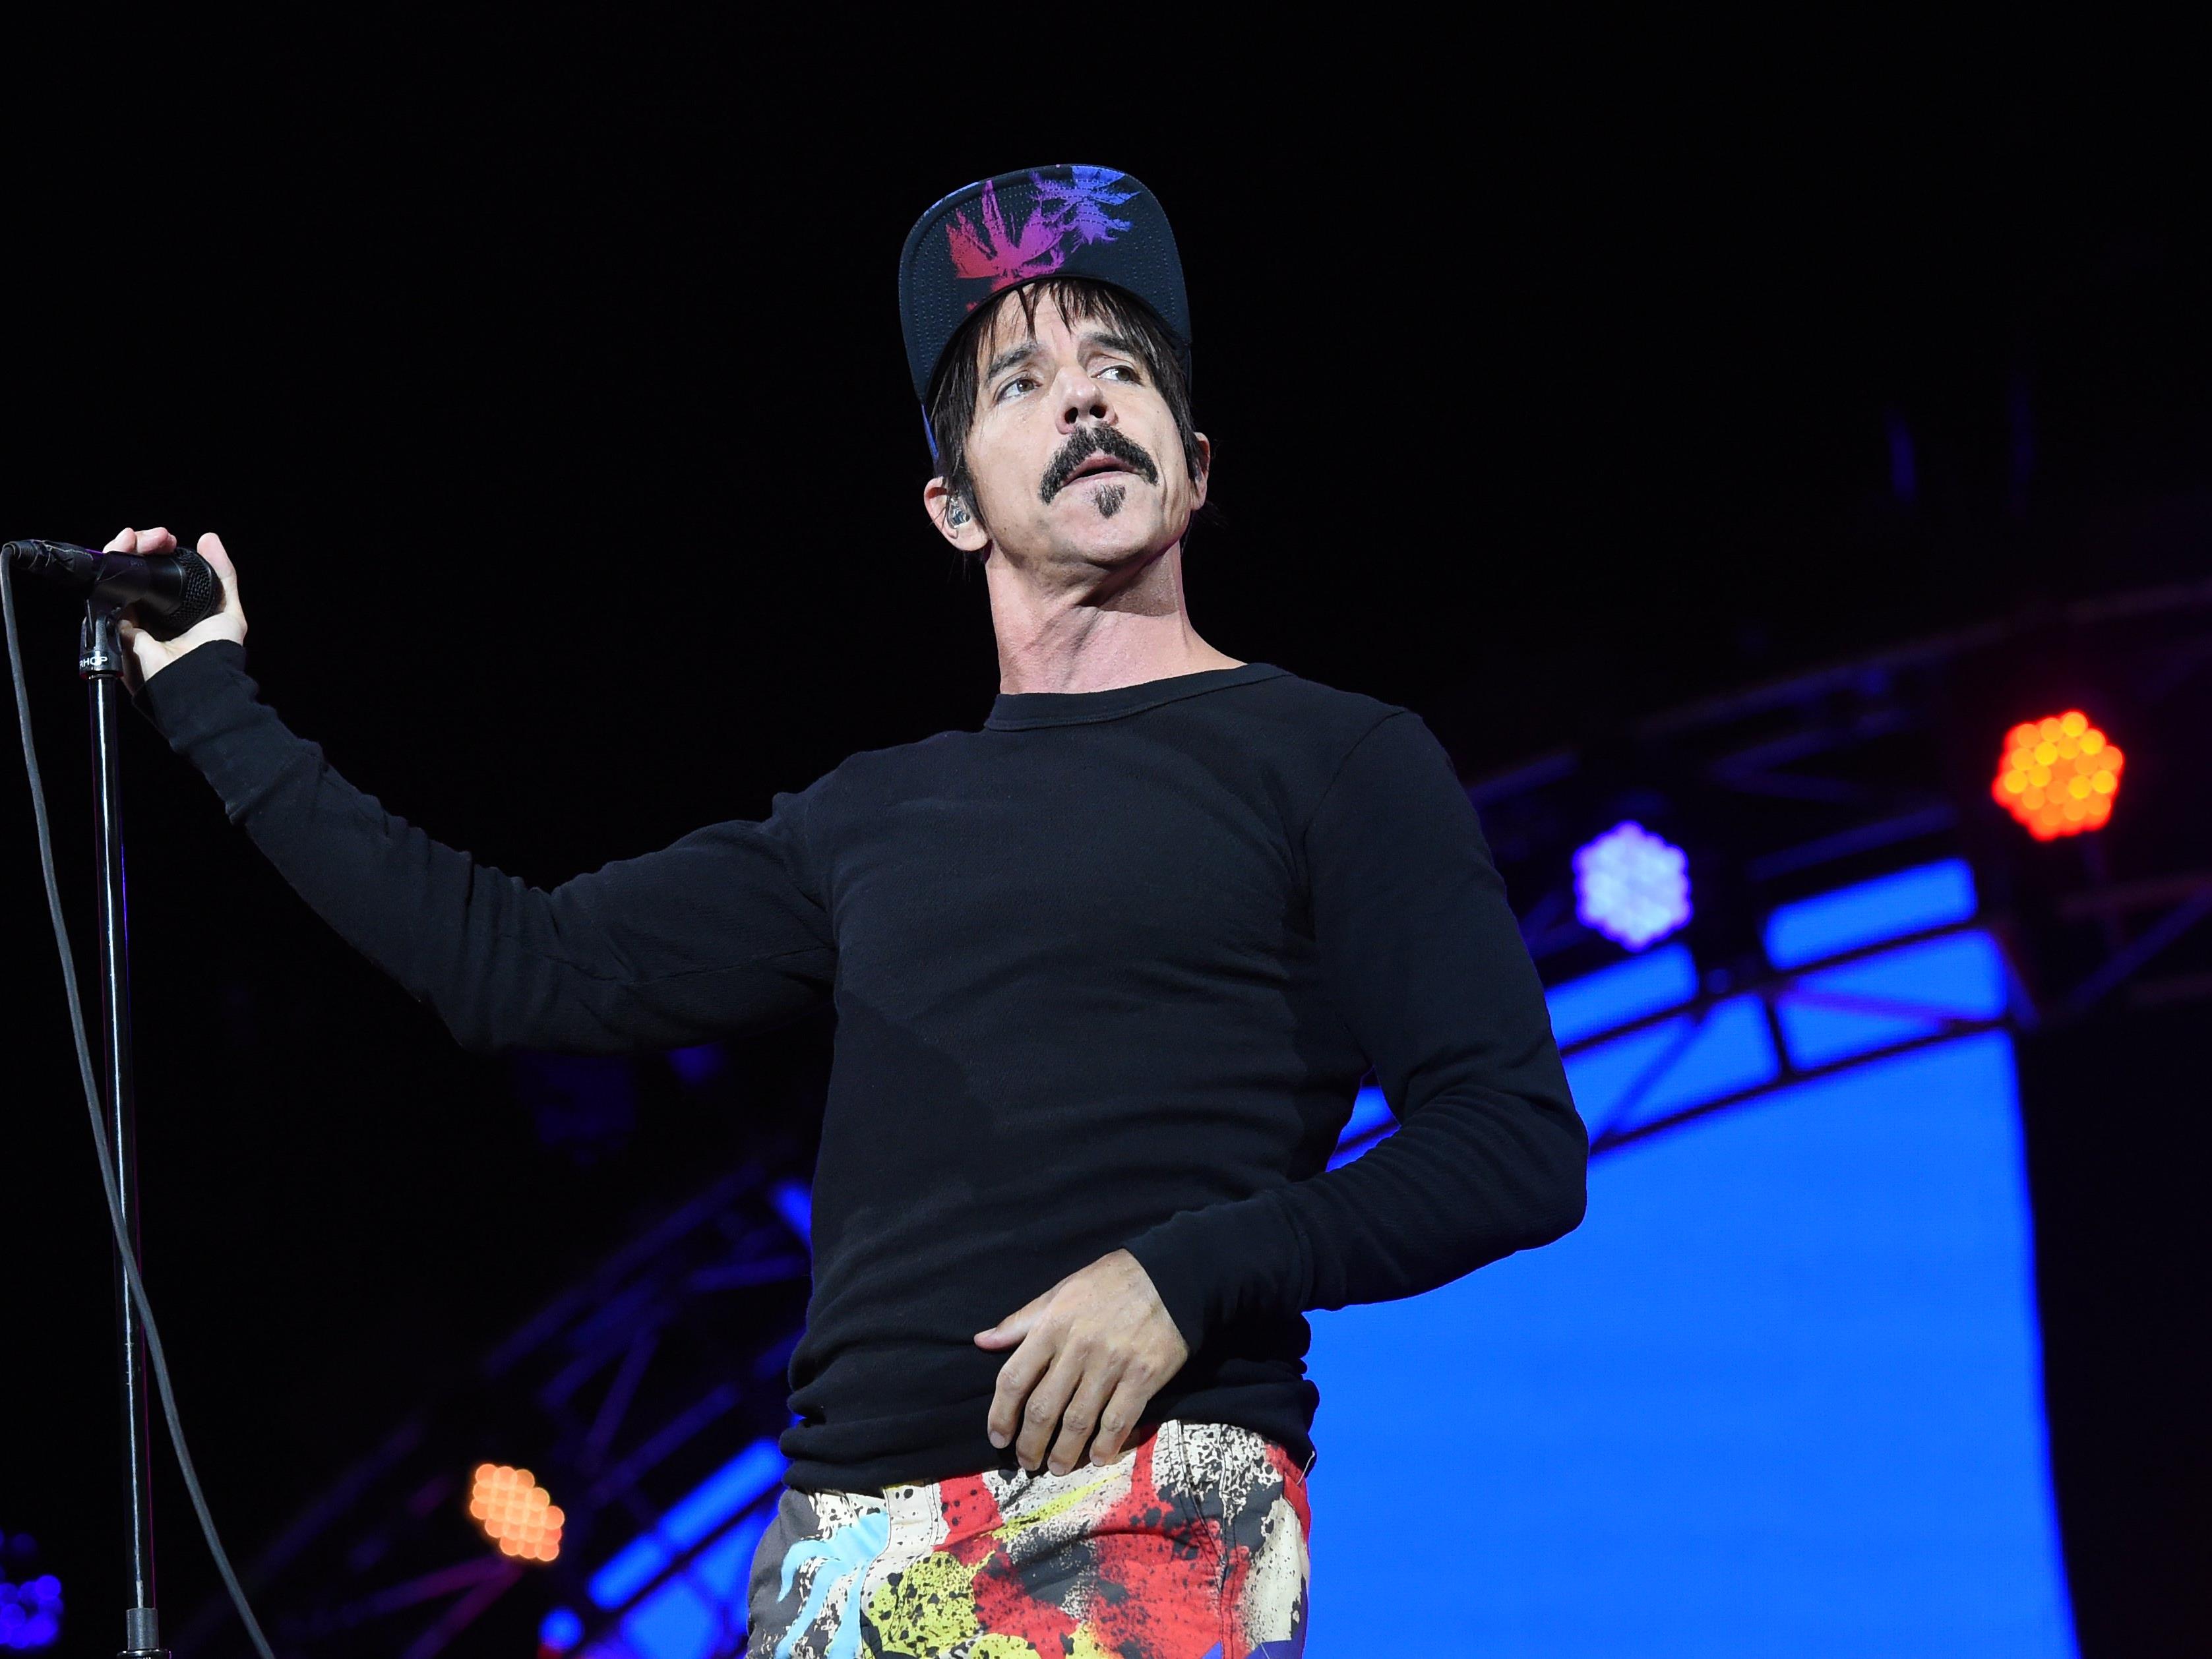 Sänger Anthony Kiedis von der Band "Red Hot Chili Peppers" bewies sich als Lebensretter.